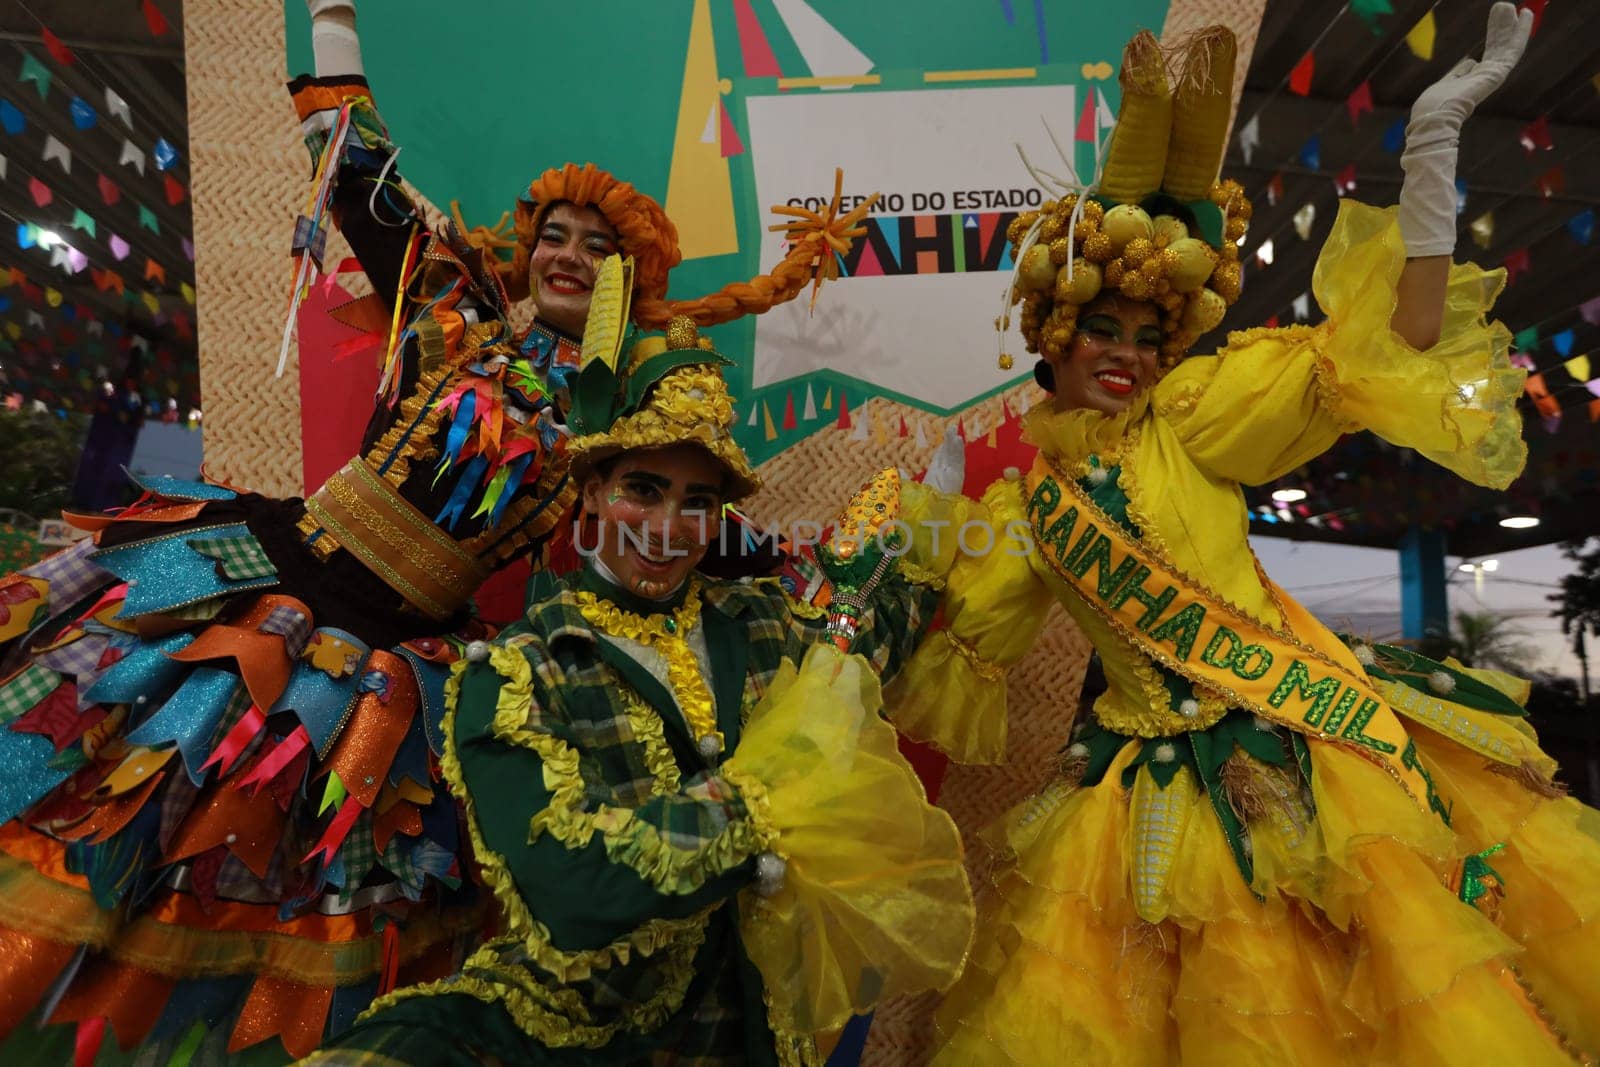 Sao Joao celebrations in Bahia by joasouza